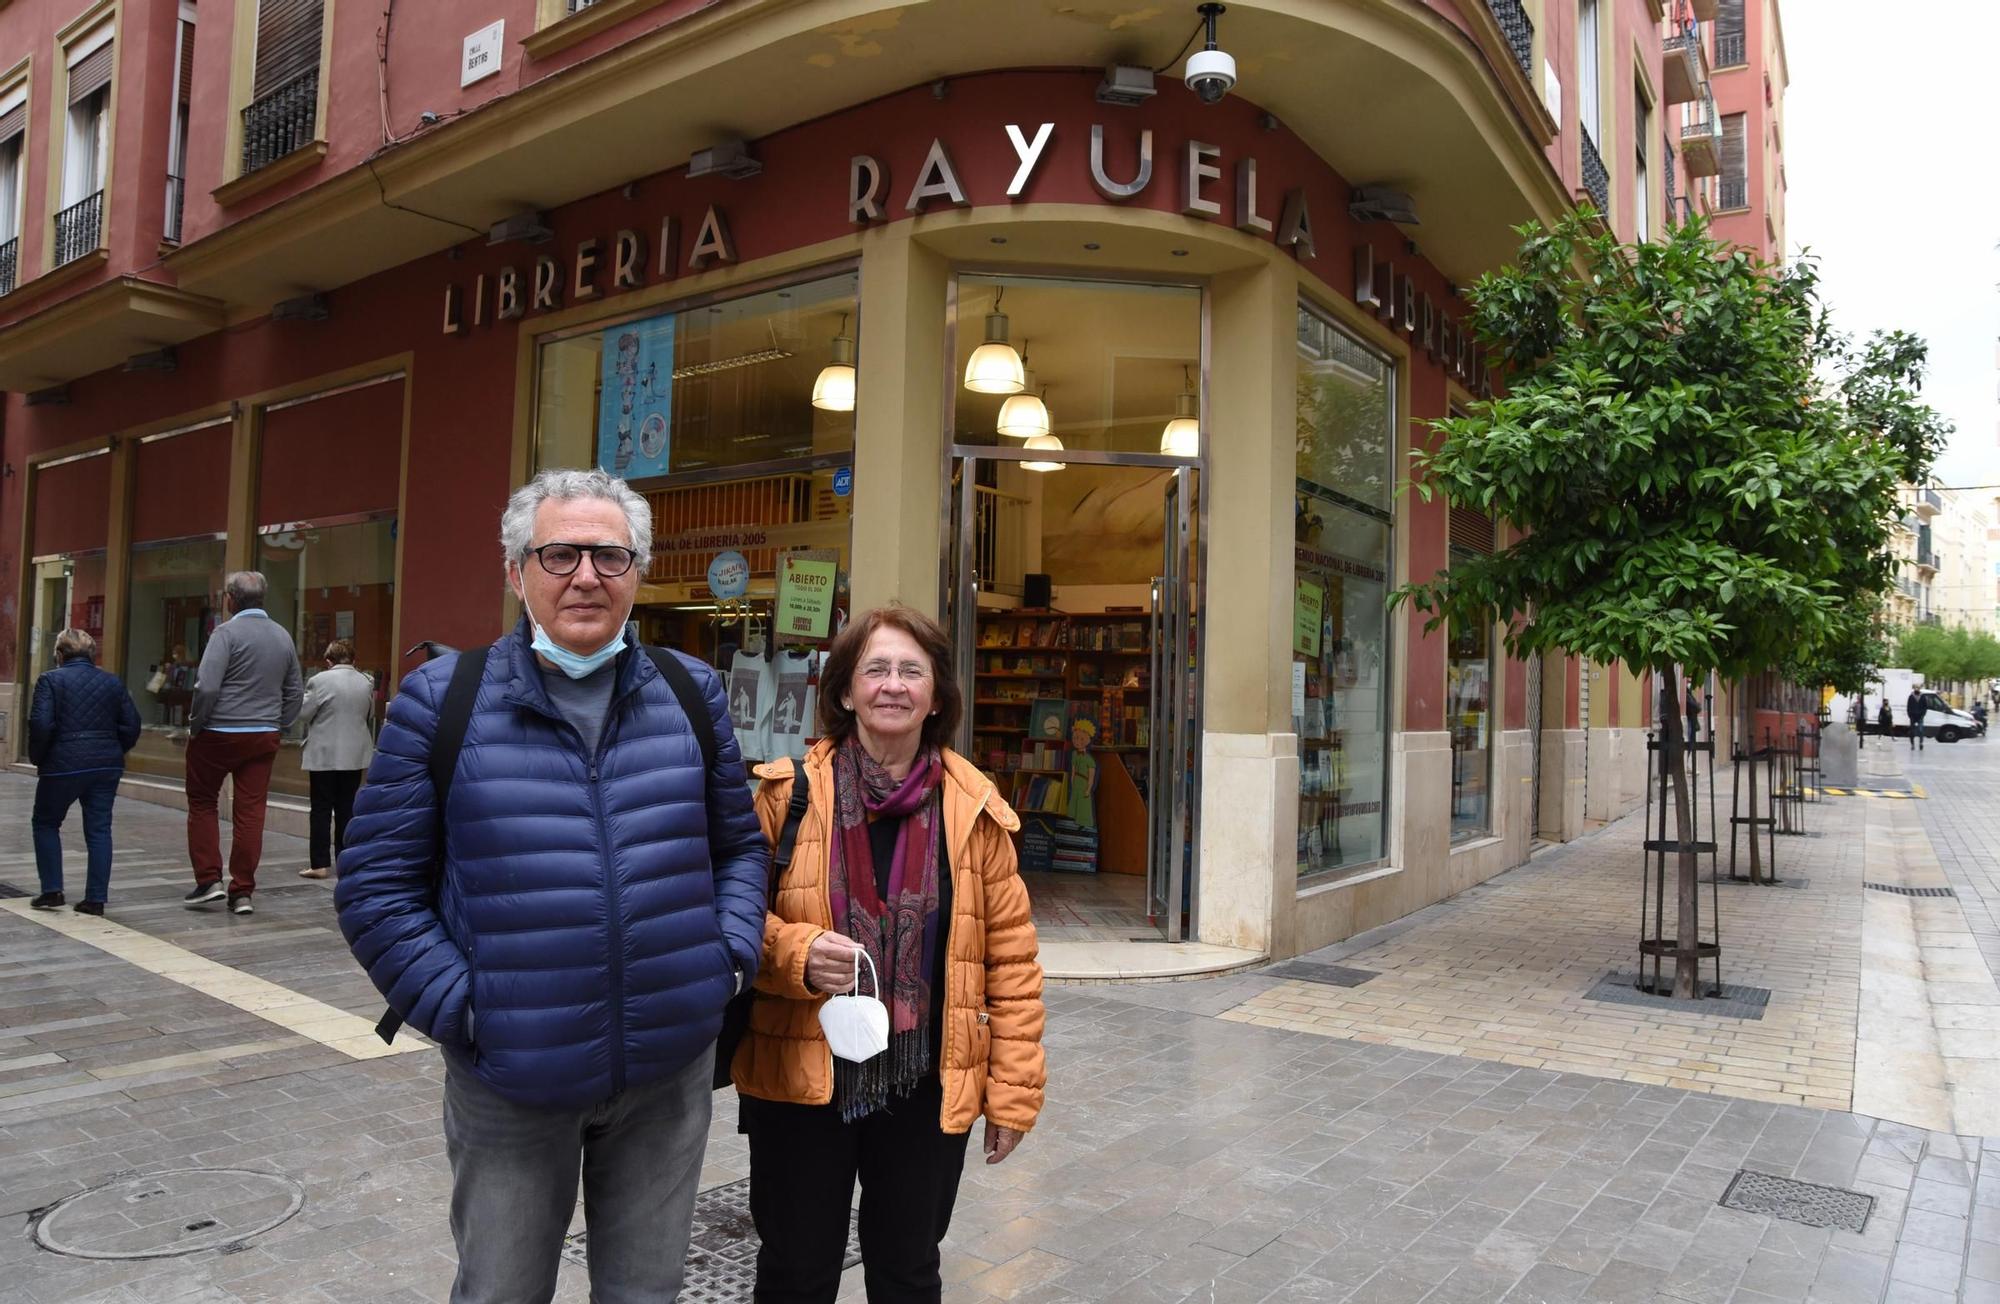 Los libreros Juan Manuel Cruz, fallecido en diciembre, y Carmen Niño, delante de la librería Rayuela.